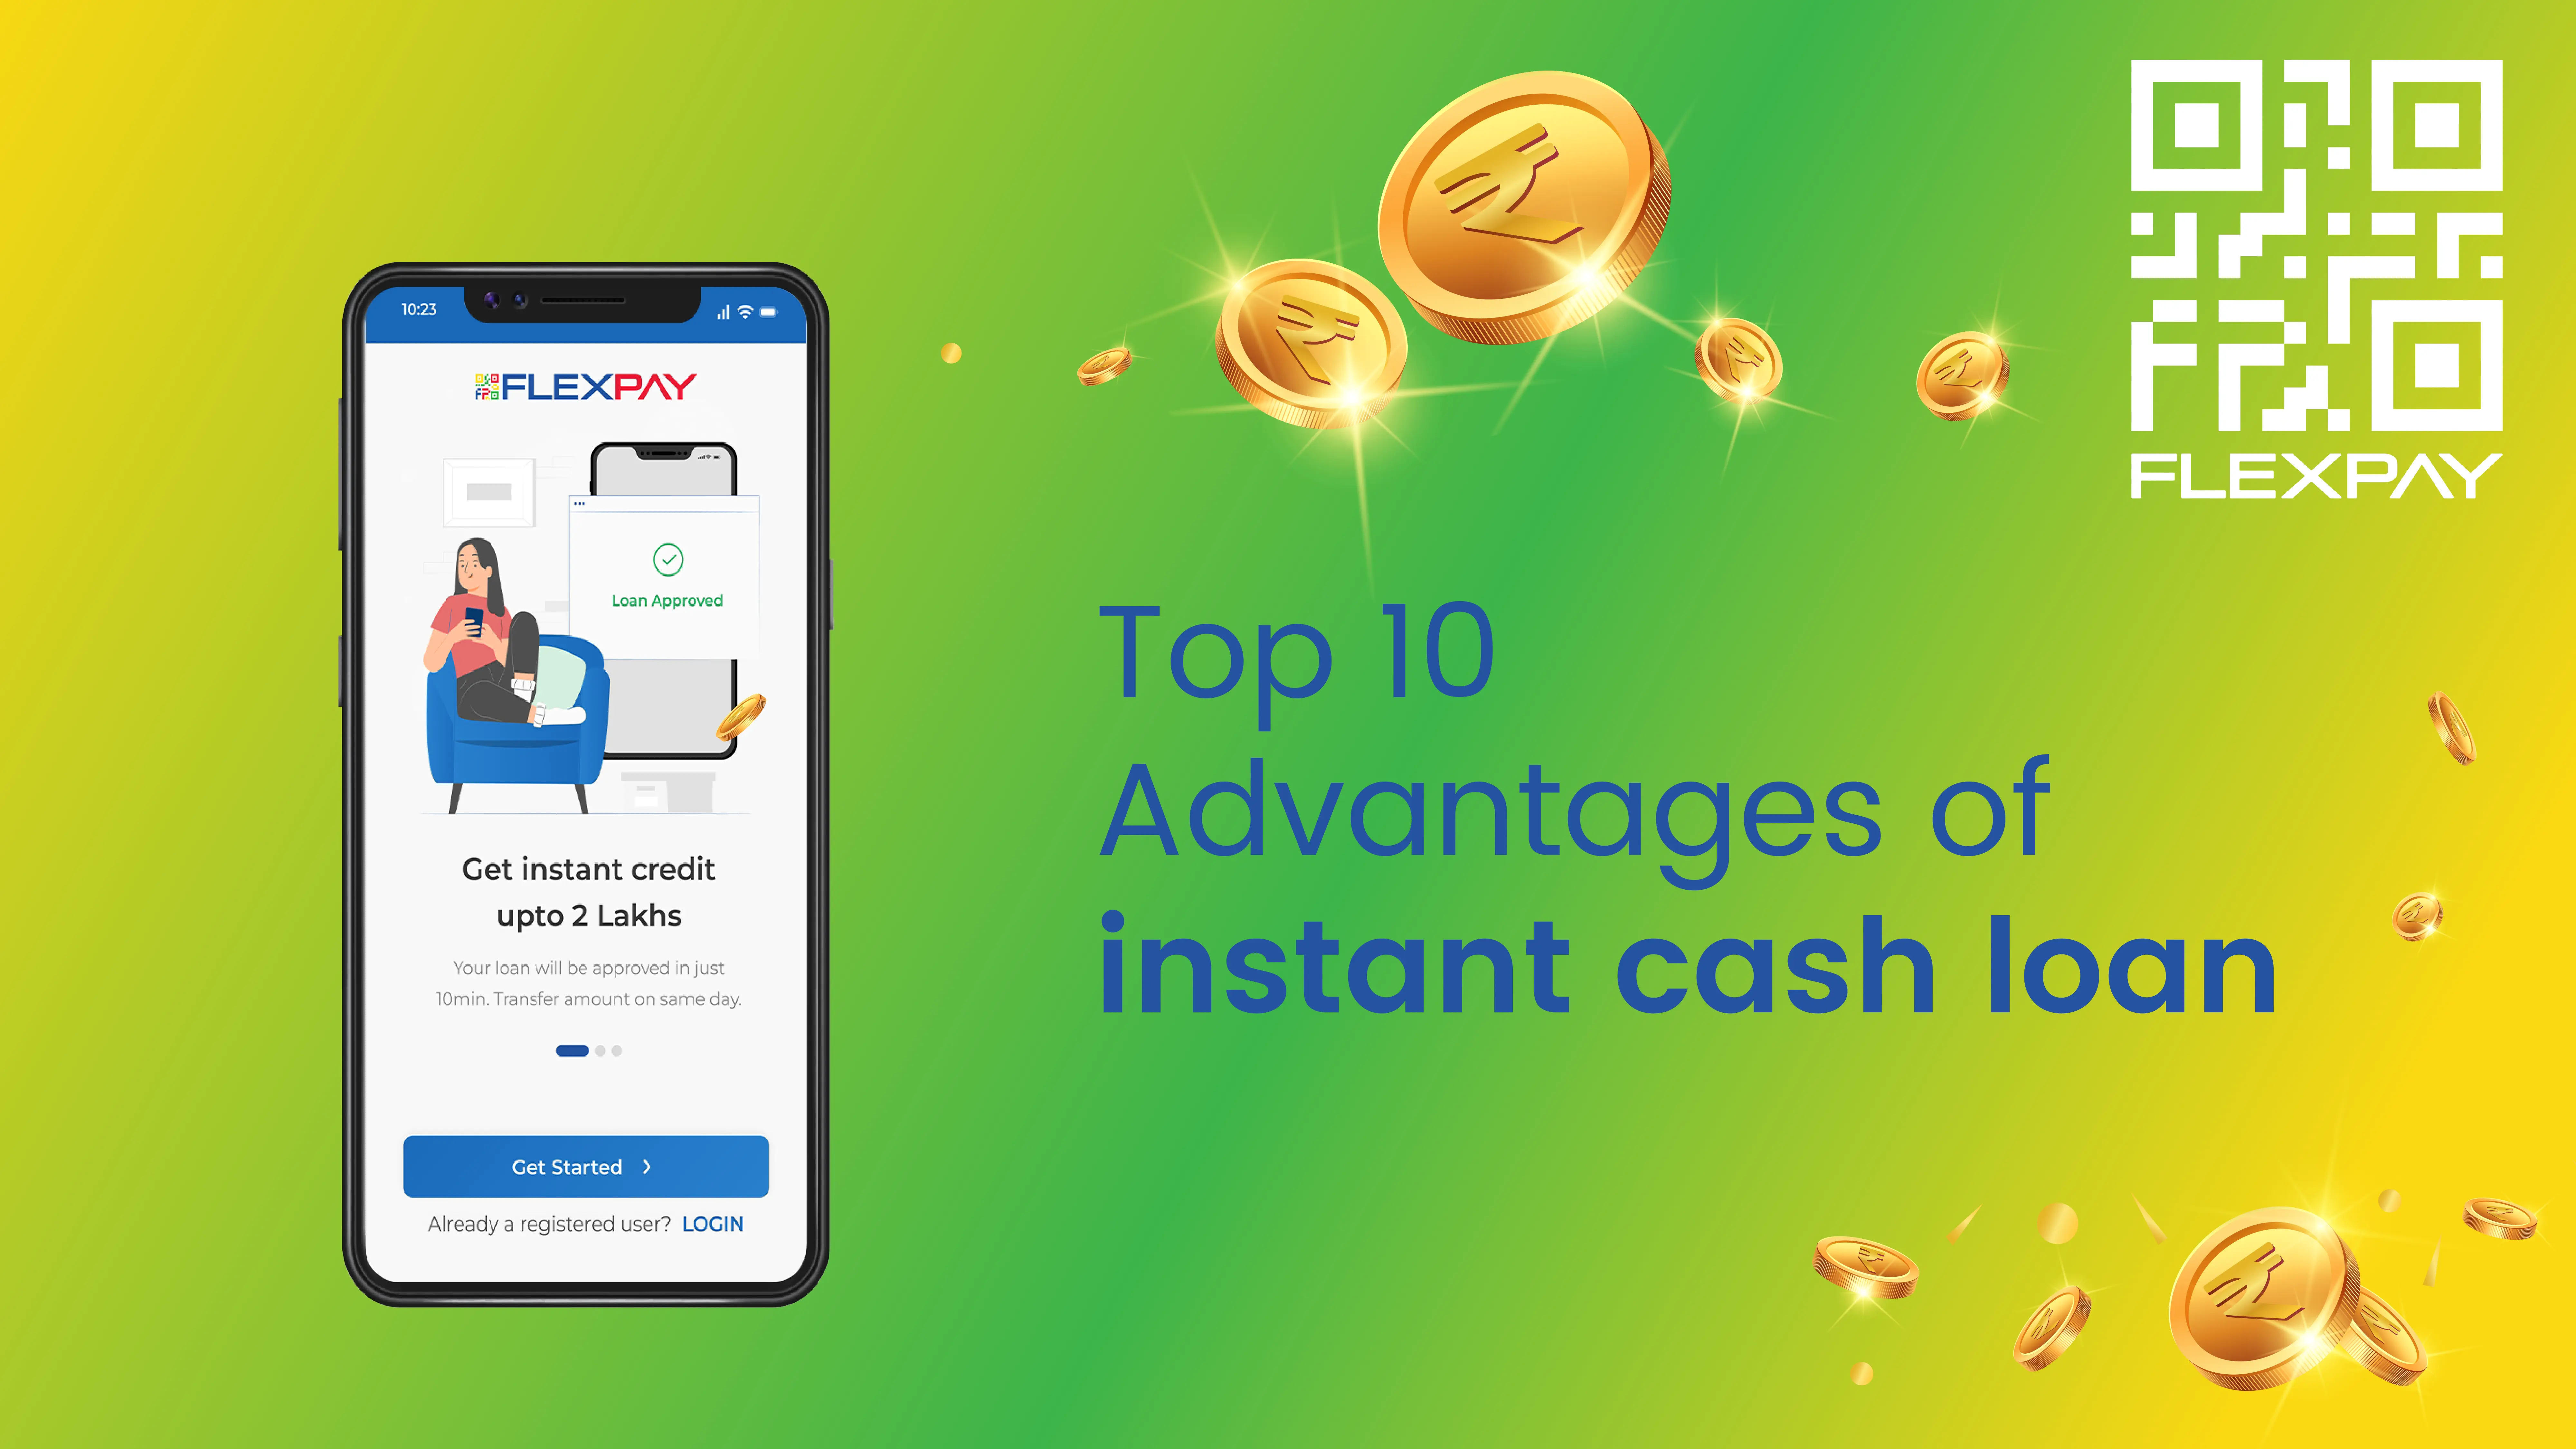 
Top 10 Advantages Of Instant Cash Loans